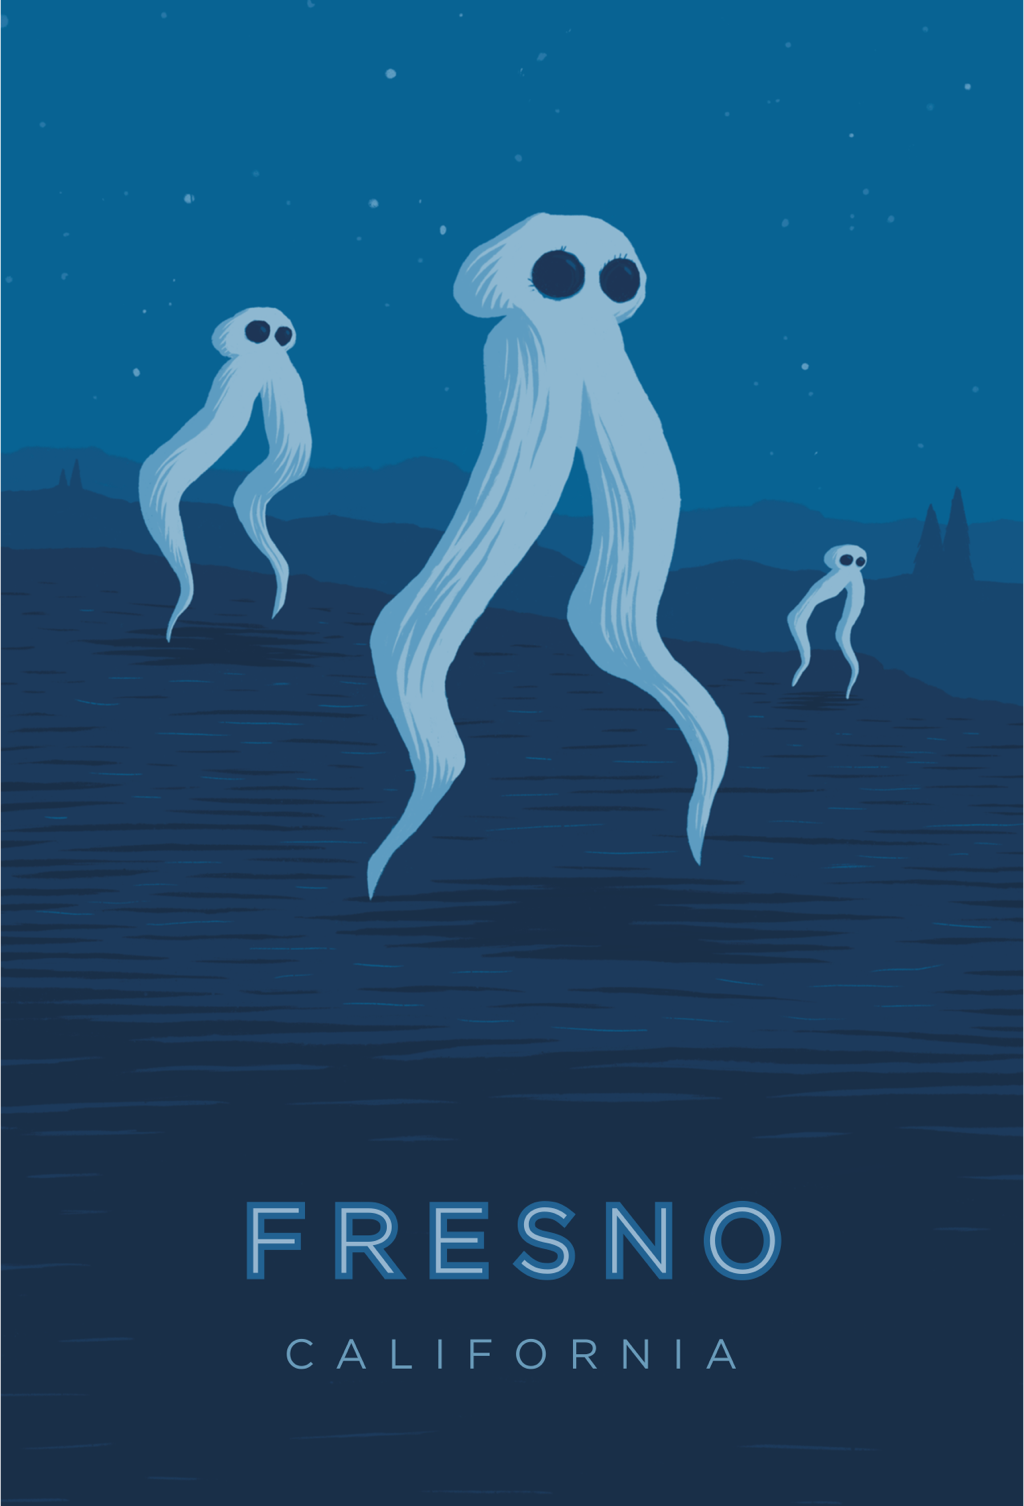 Fresno California travel poster print 18x27